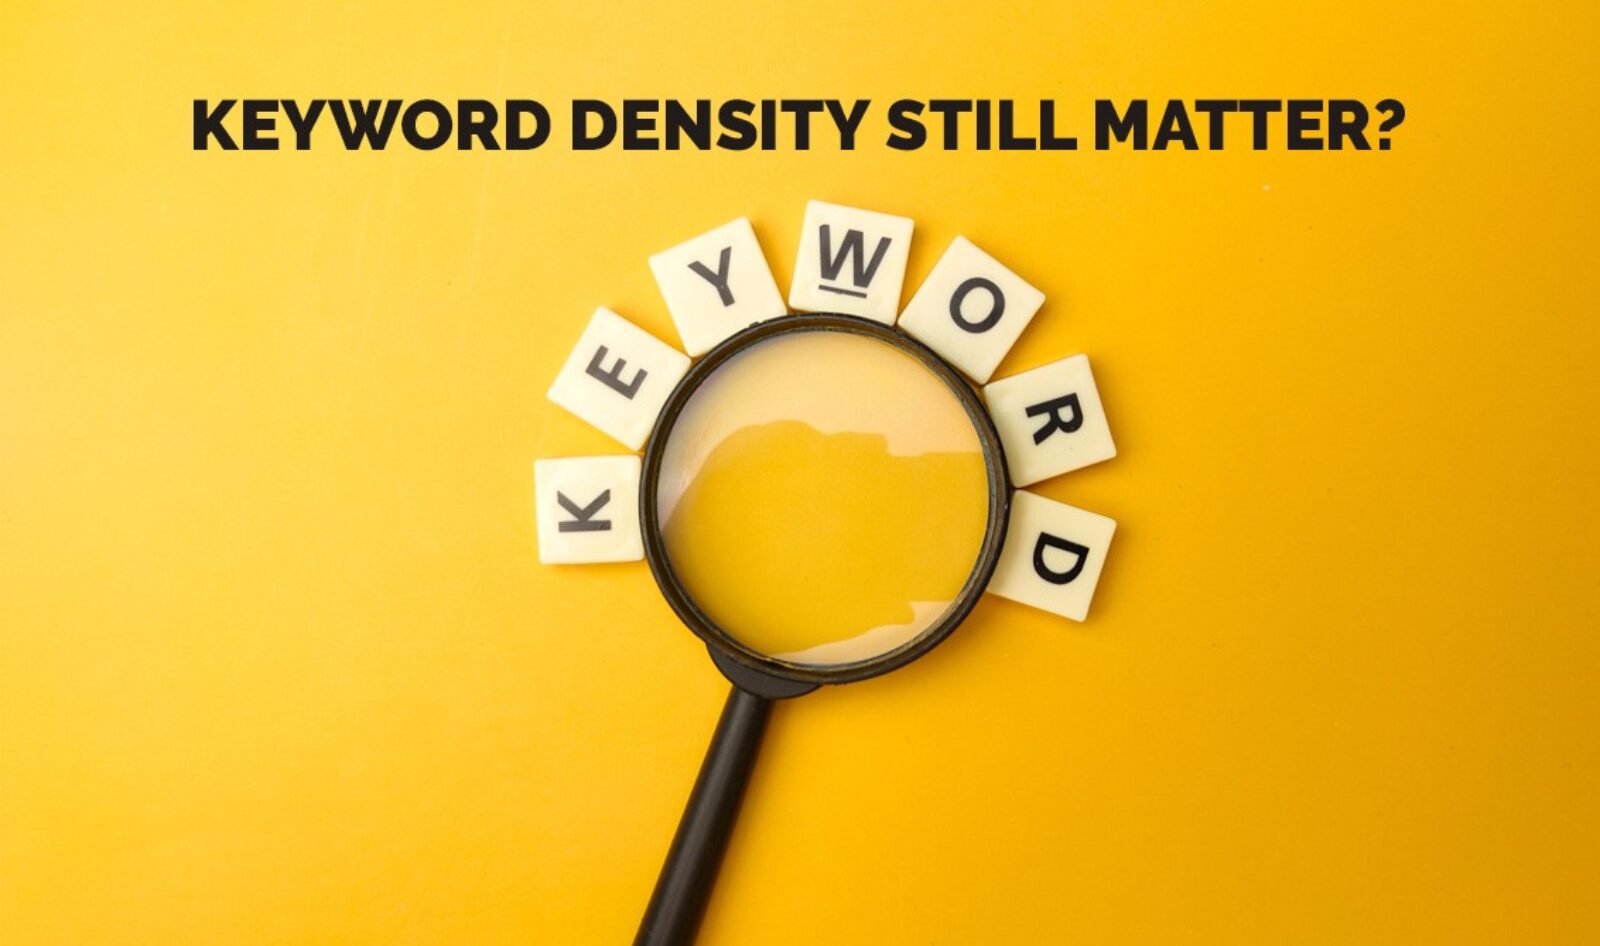 Does Keyword density still matter in SEO?